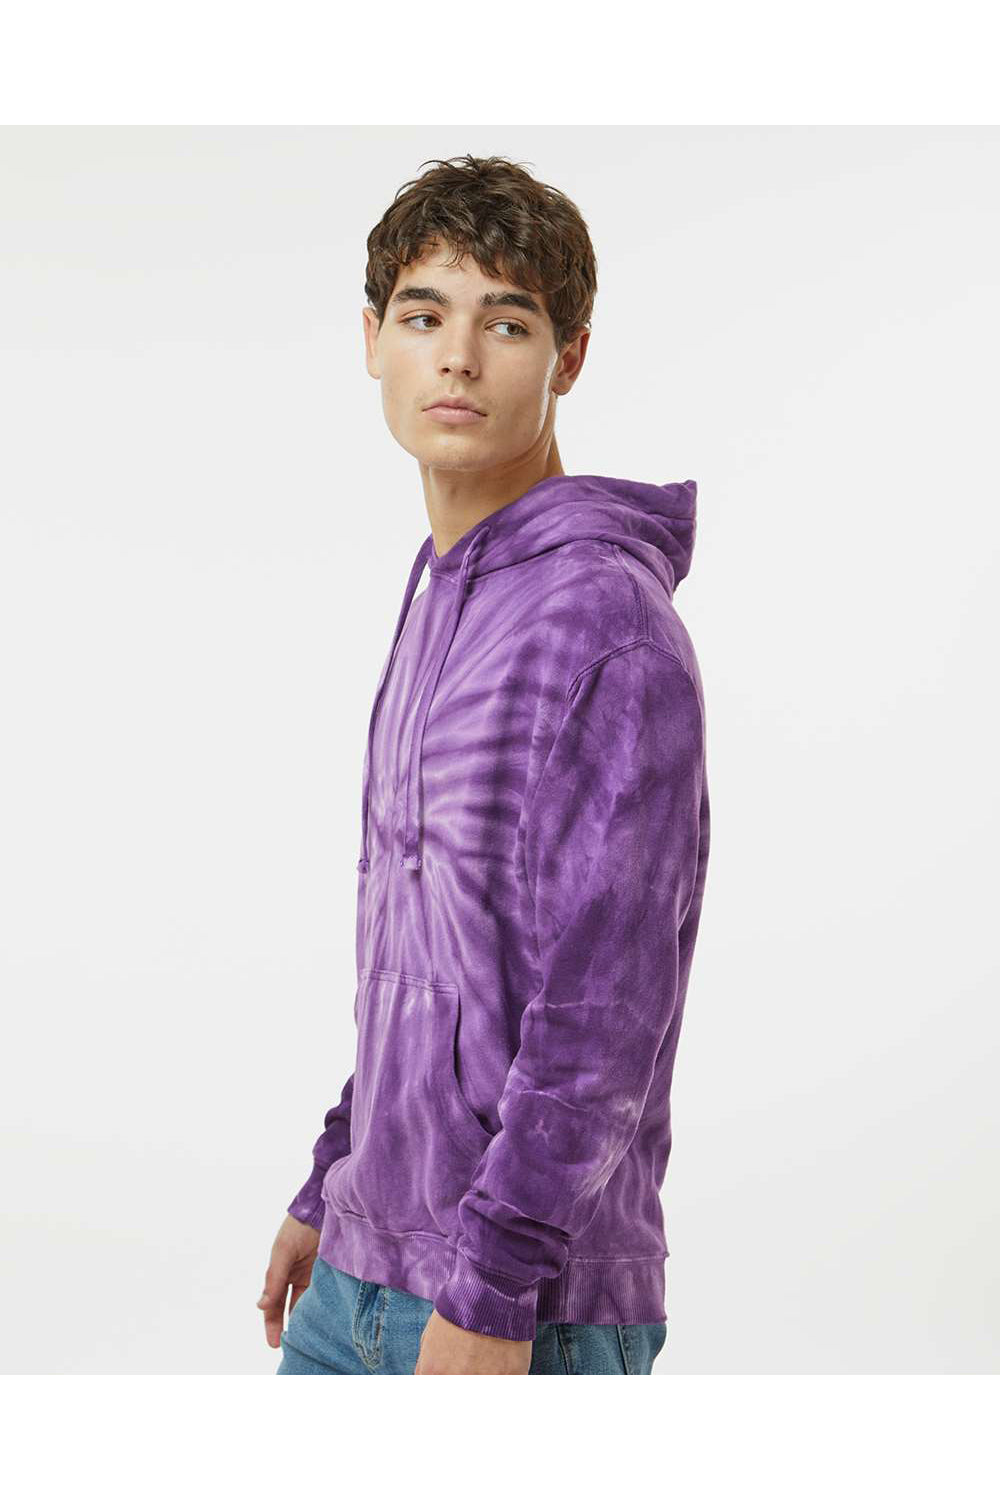 Dyenomite 854CY Mens Cyclone Tie Dyed Hooded Sweatshirt Hoodie Purple Model Side